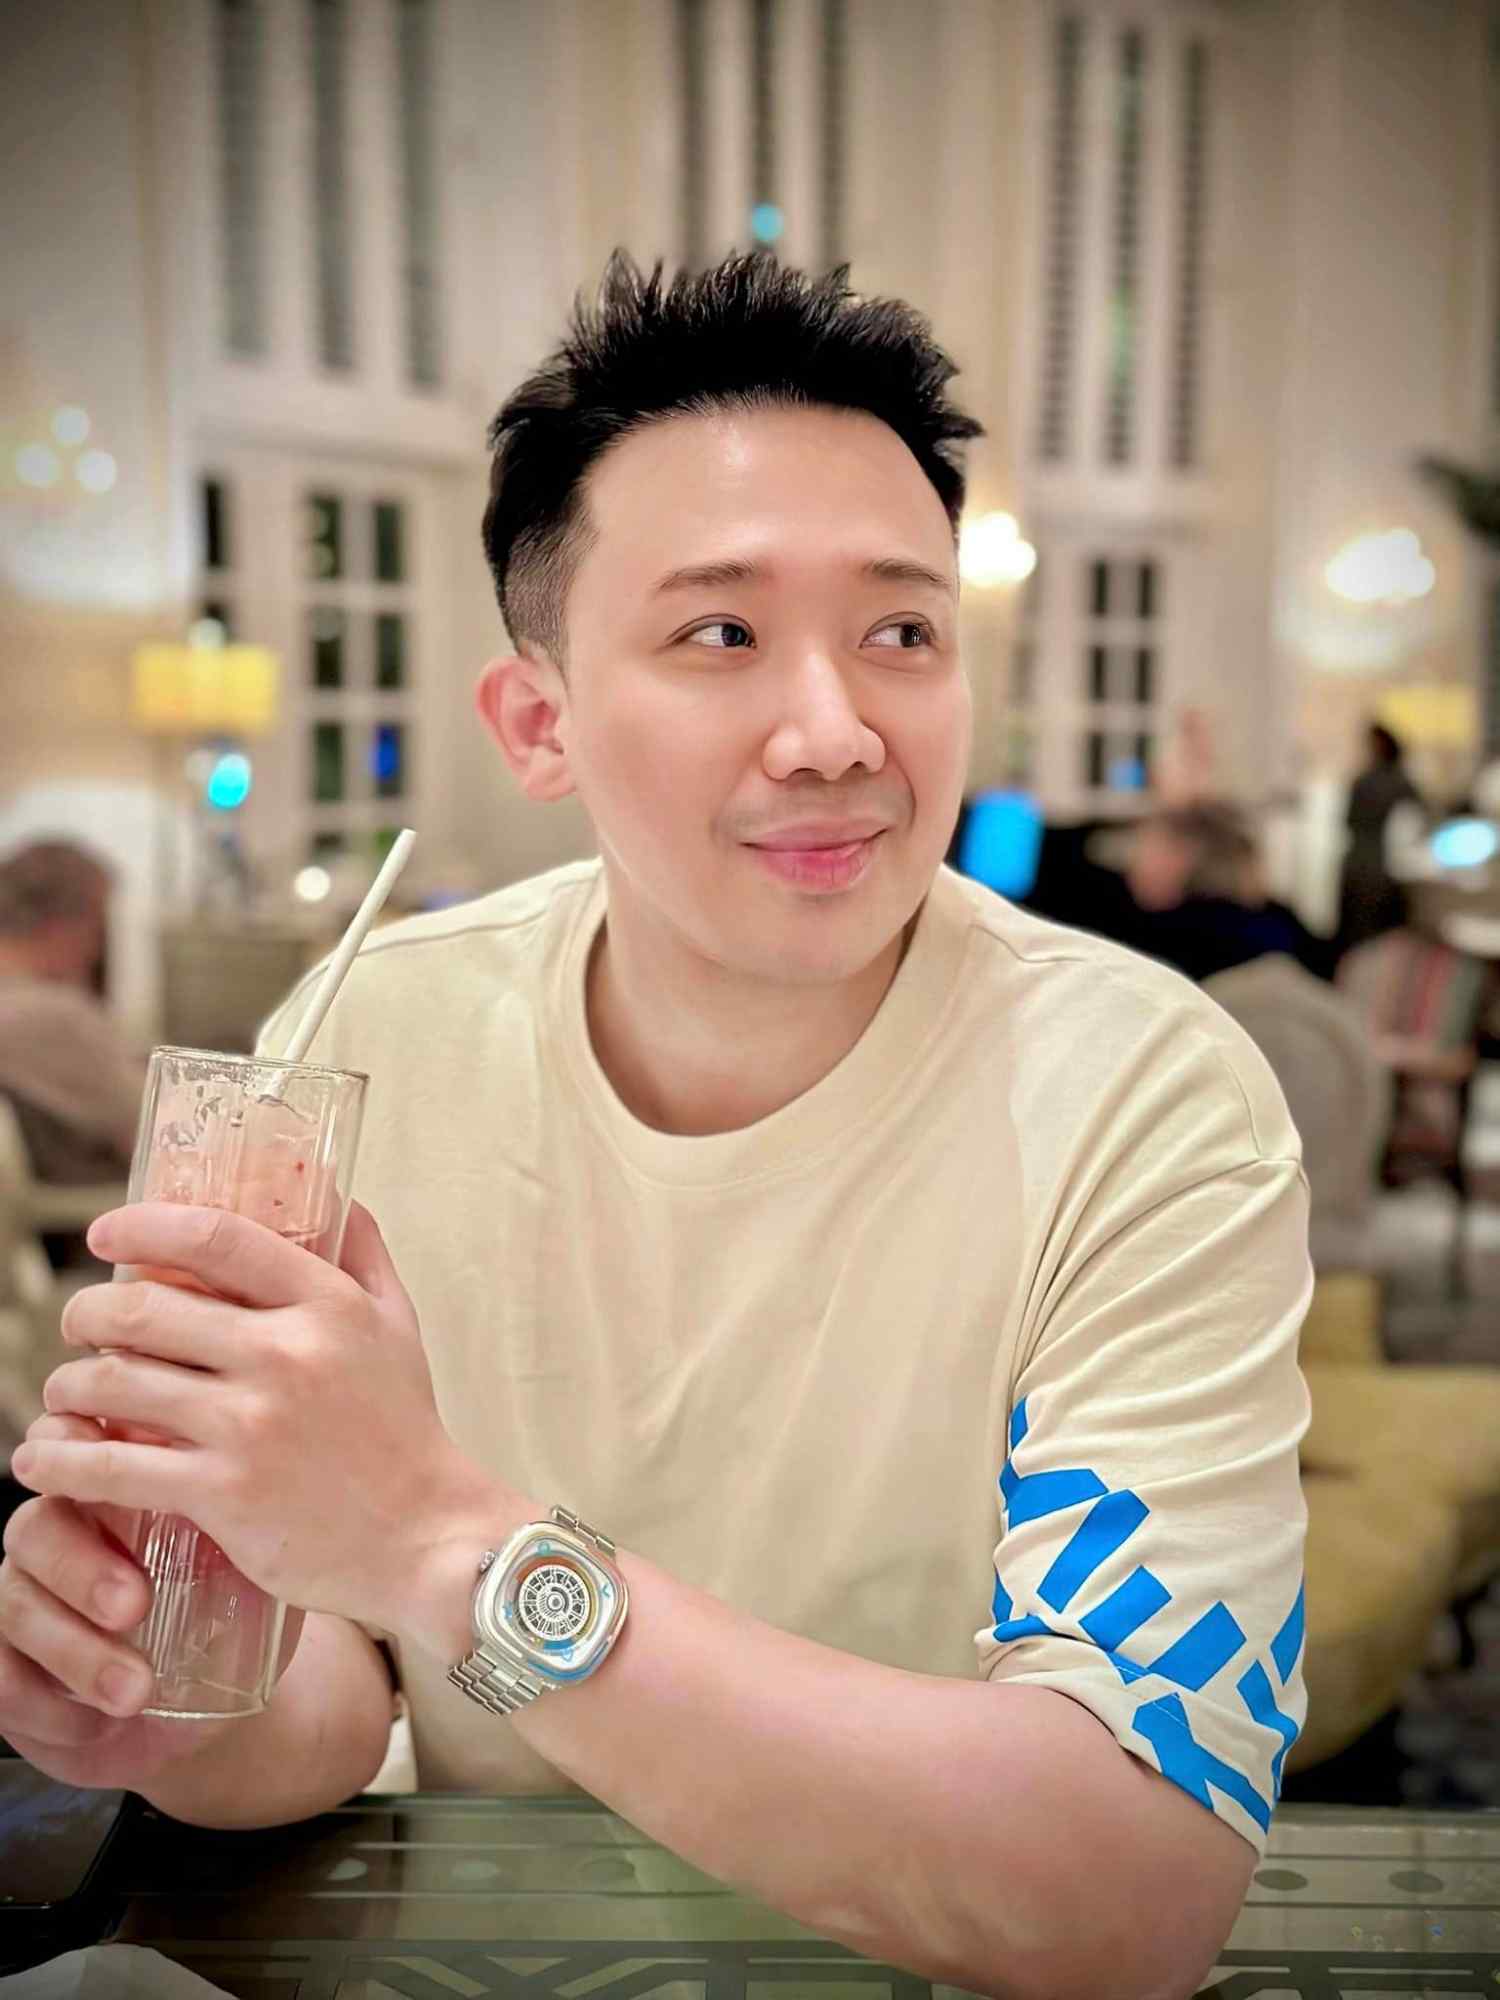 Trấn Thành đeo đồng hồ thời trang có giá 31 triệu đồng. Ảnh: Facebook nhân vật.